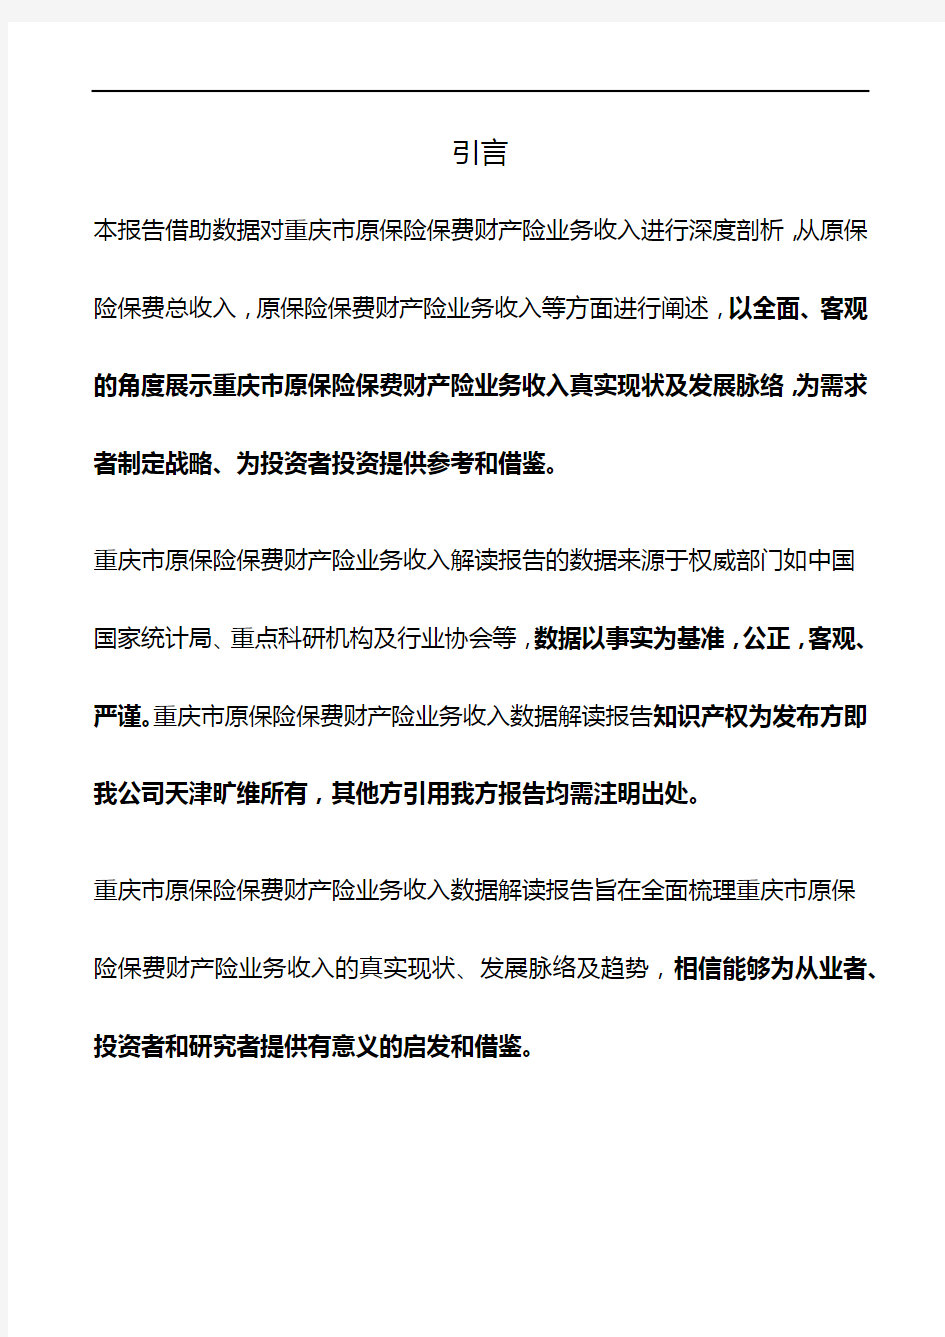 重庆市原保险保费财产险业务收入3年数据解读报告2019版